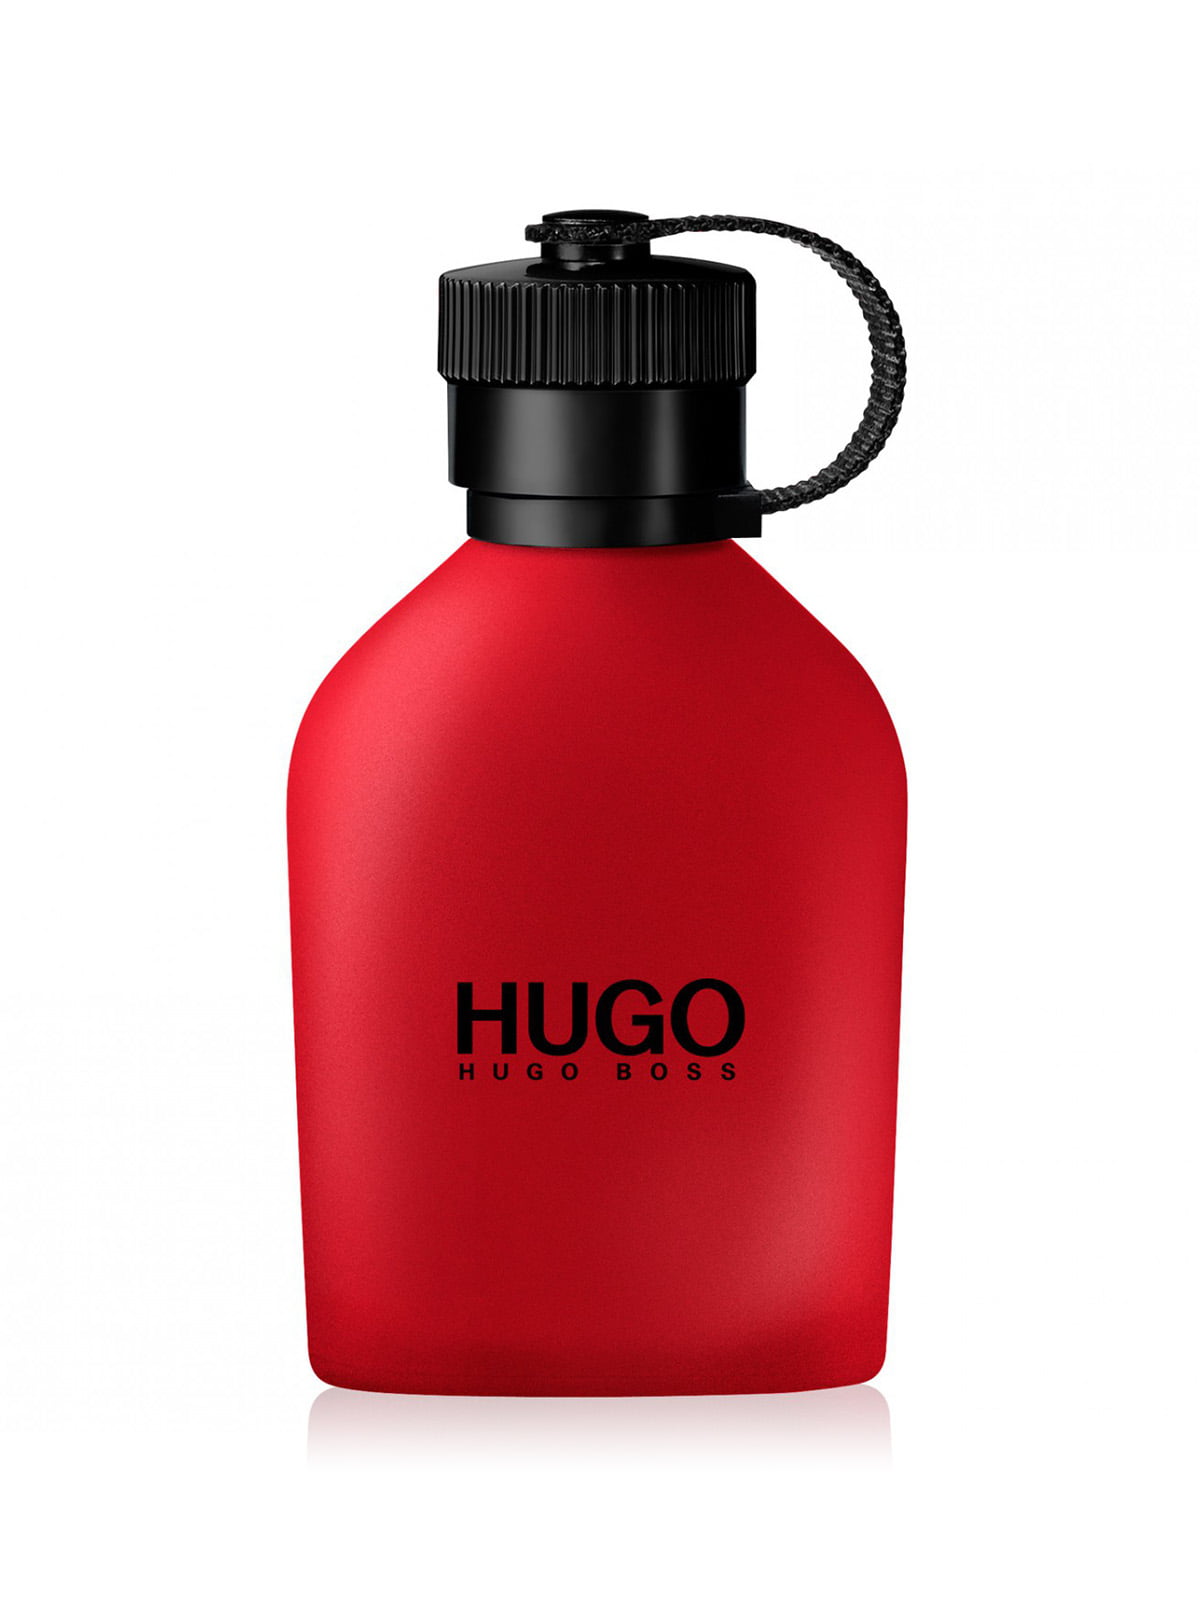 HUGO BOSS HUGO RED